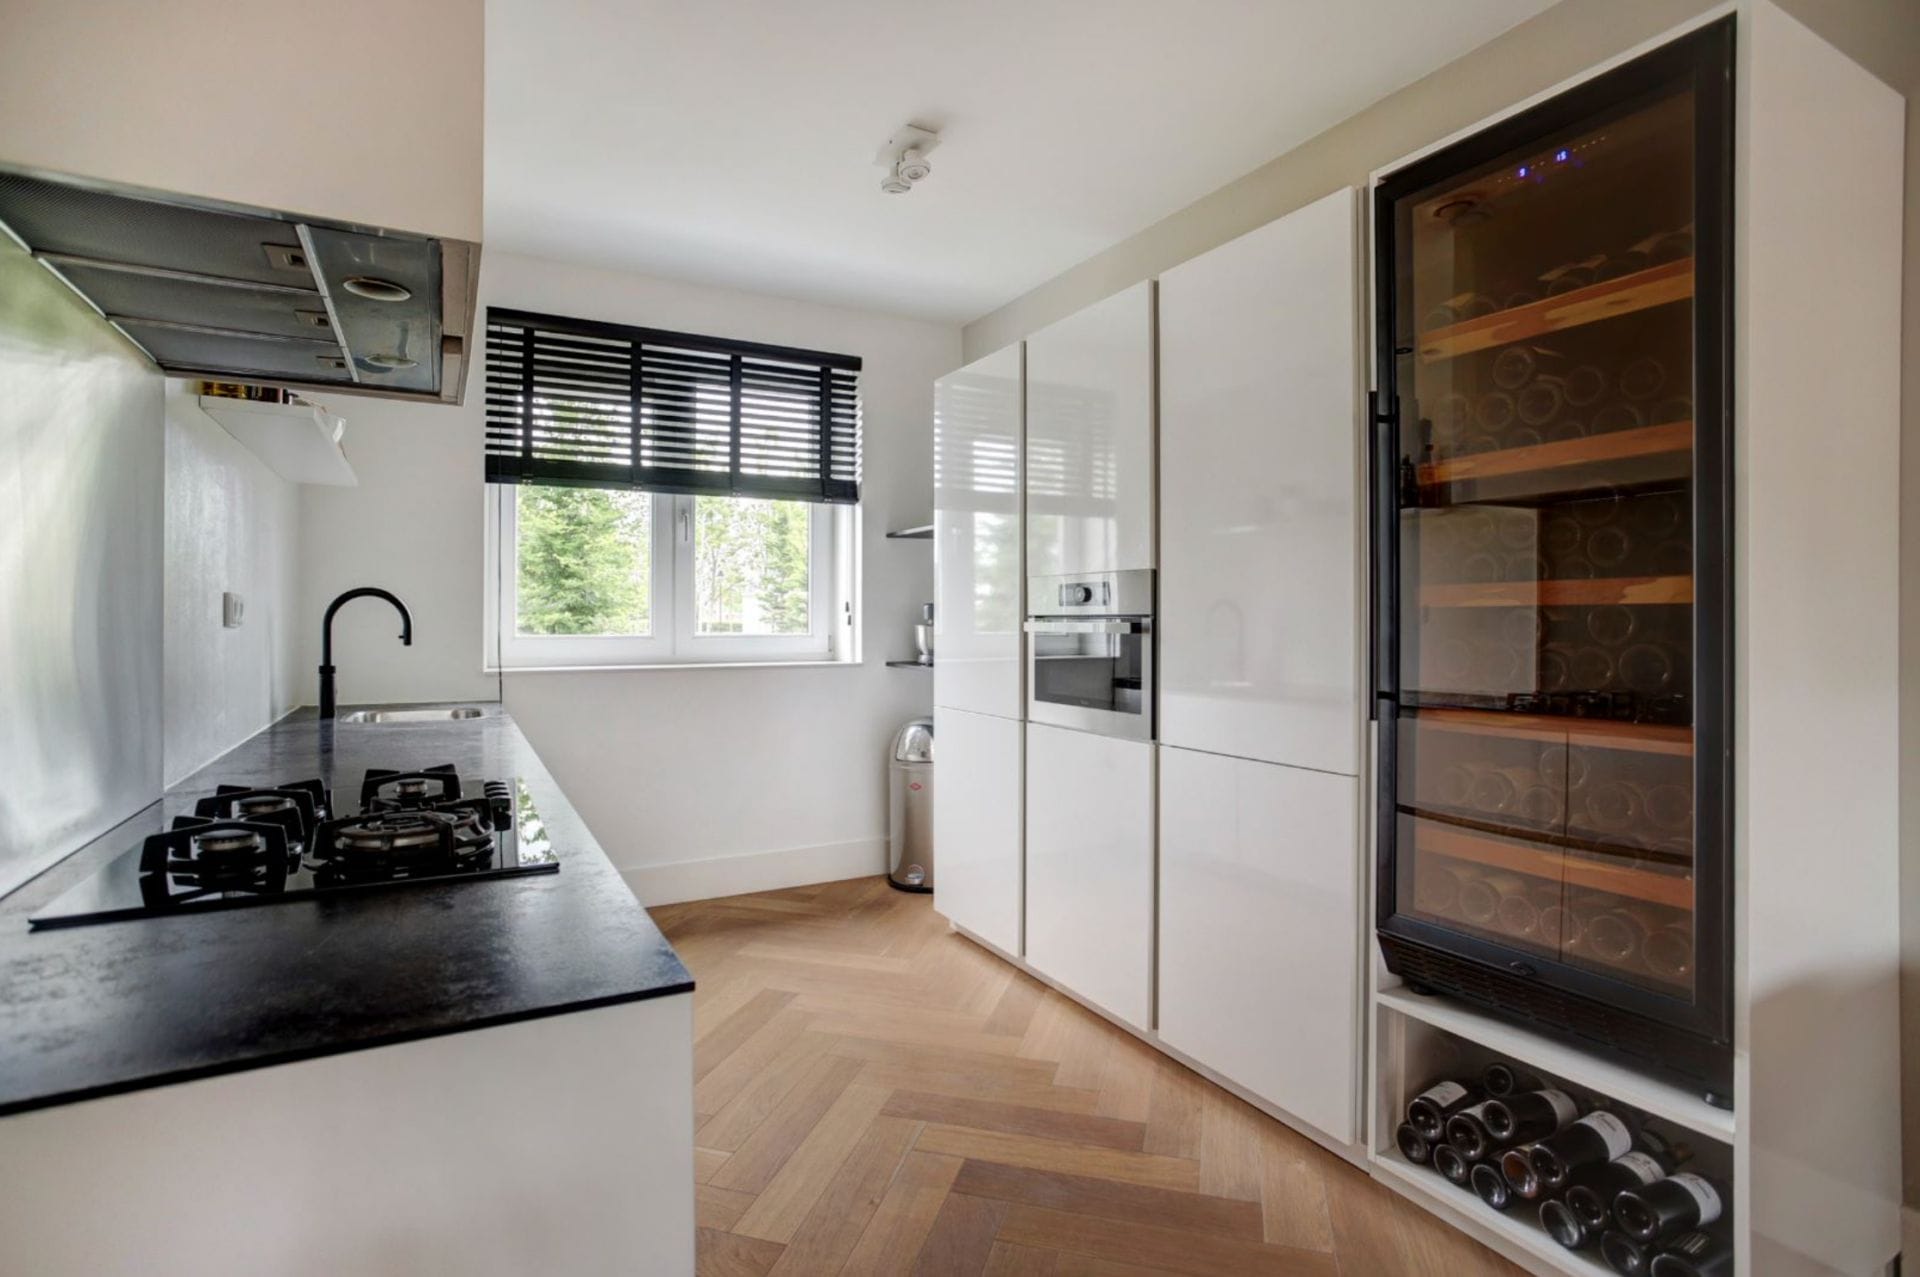 Intérieur de cuisine moderne avec plan de travail noir, placards blancs, cave à vin (200 bouteilles, une zone, hauteur 180 cm, et une fenêtre.